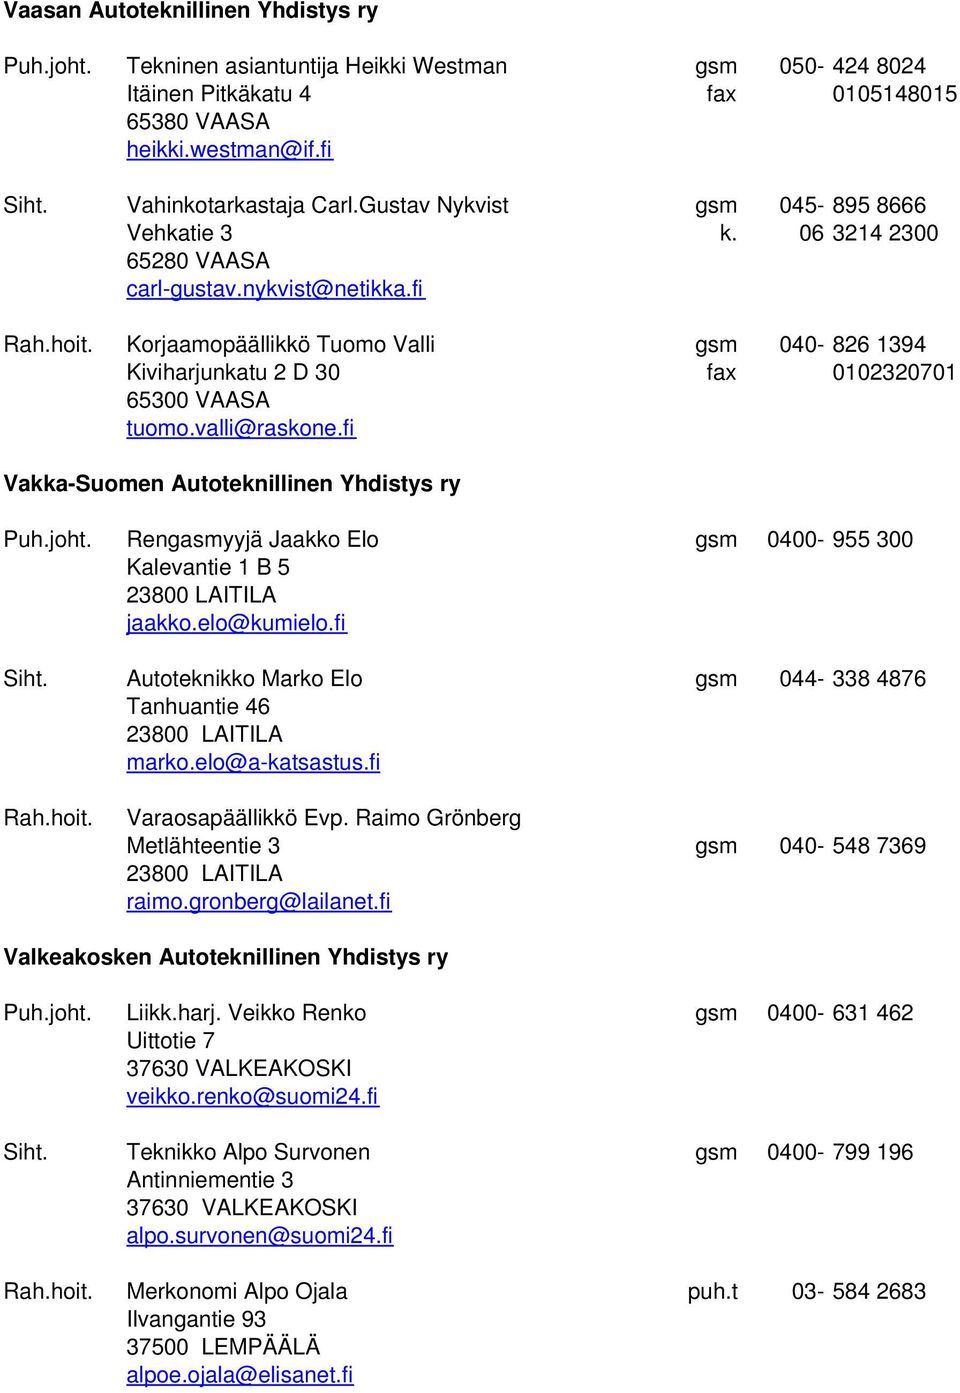 Korjaamopäällikkö Tuomo Valli gsm 040-826 1394 Kiviharjunkatu 2 D 30 fax 0102320701 65300 VAASA tuomo.valli@raskone.fi Vakka-Suomen Autoteknillinen Yhdistys ry Puh.joht.